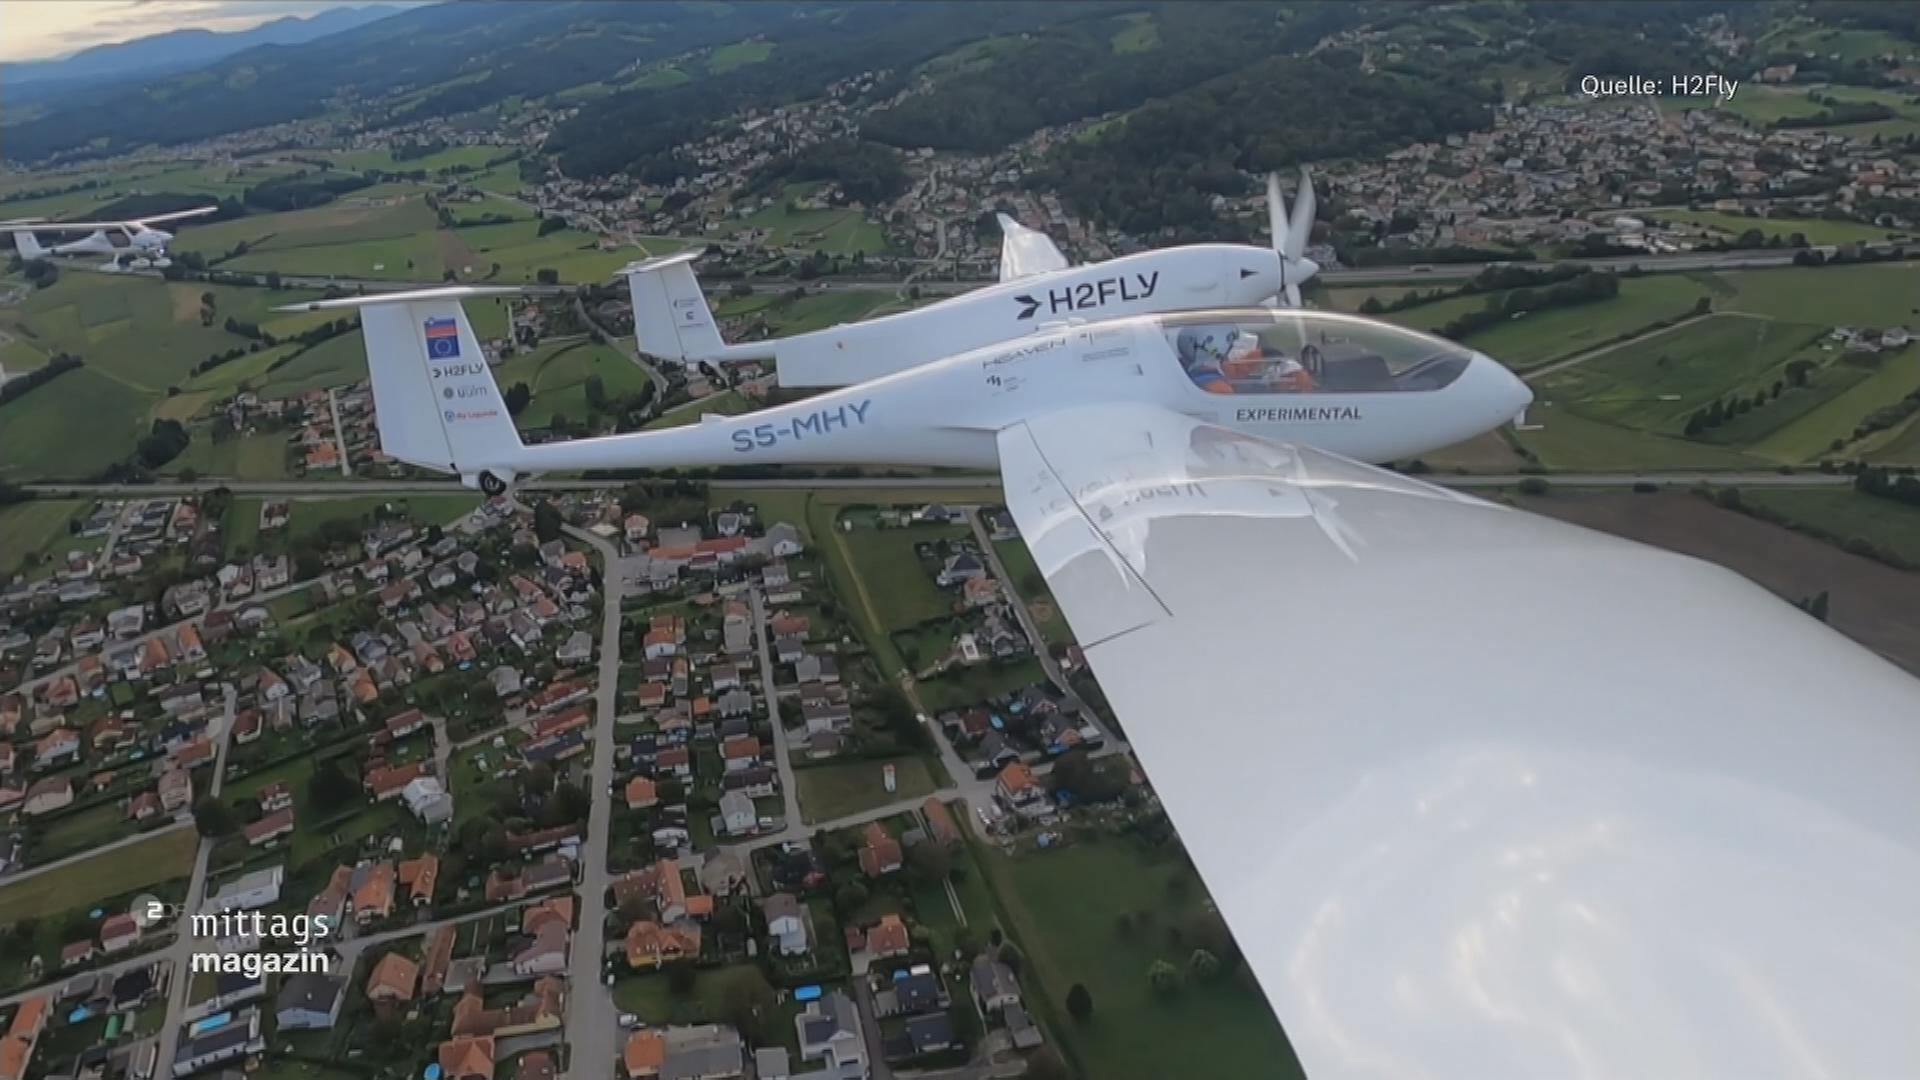 Luftaufnahme eines Flugzeugs des Unternehmes "H2FLY", das mit flüssigem Wasserstoff betrieben wird